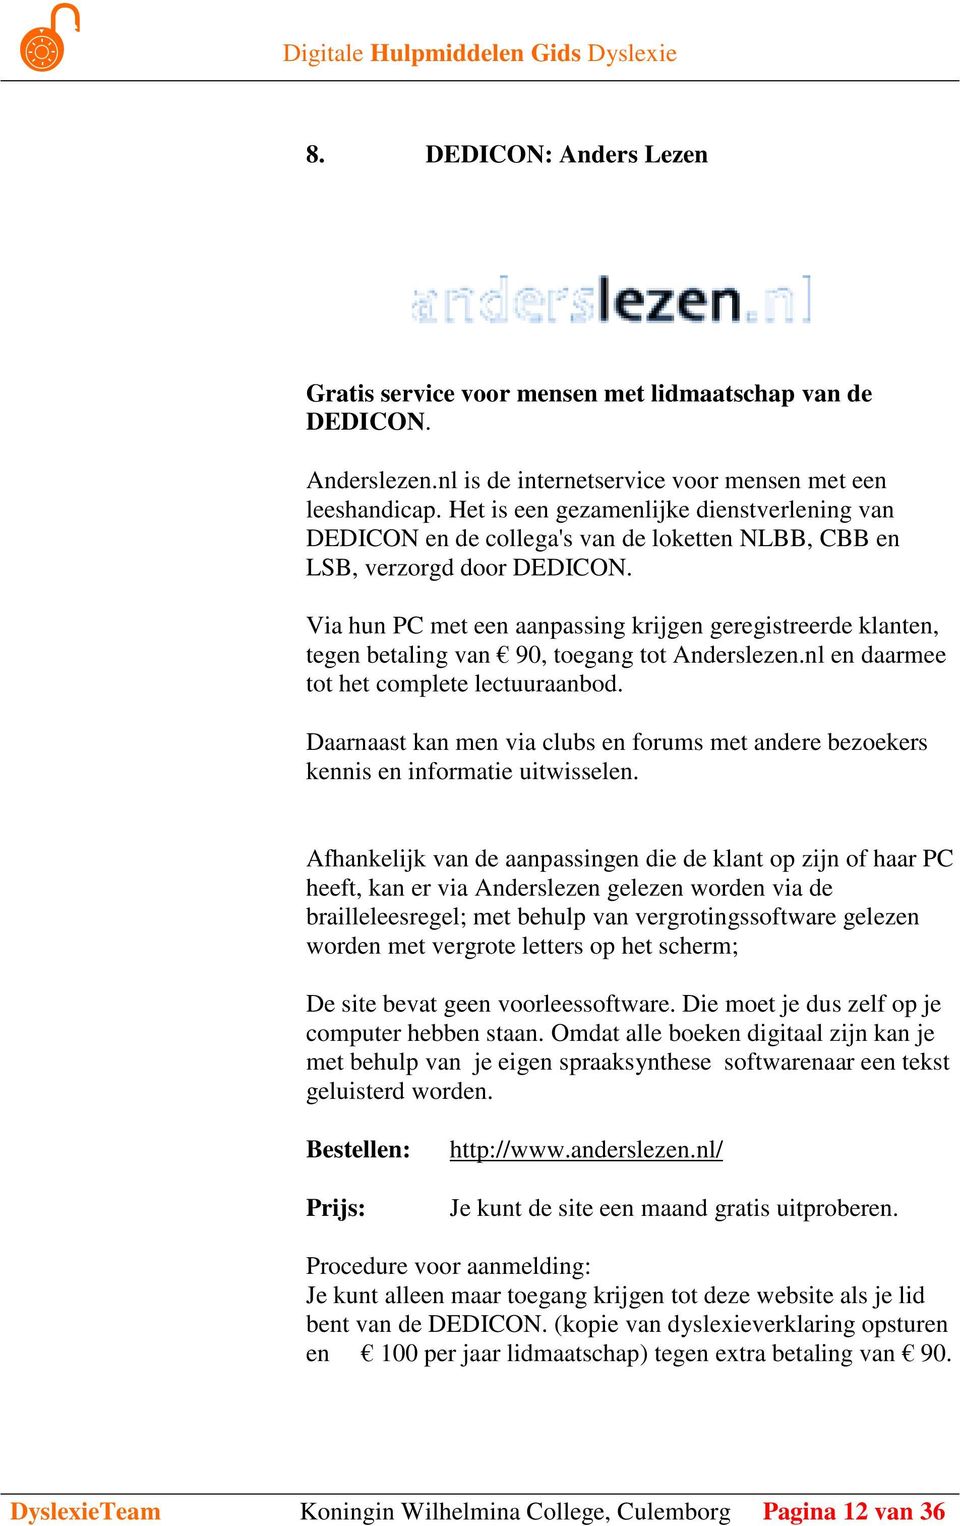 Via hun PC met een aanpassing krijgen geregistreerde klanten, tegen betaling van 90, toegang tot Anderslezen.nl en daarmee tot het complete lectuuraanbod.